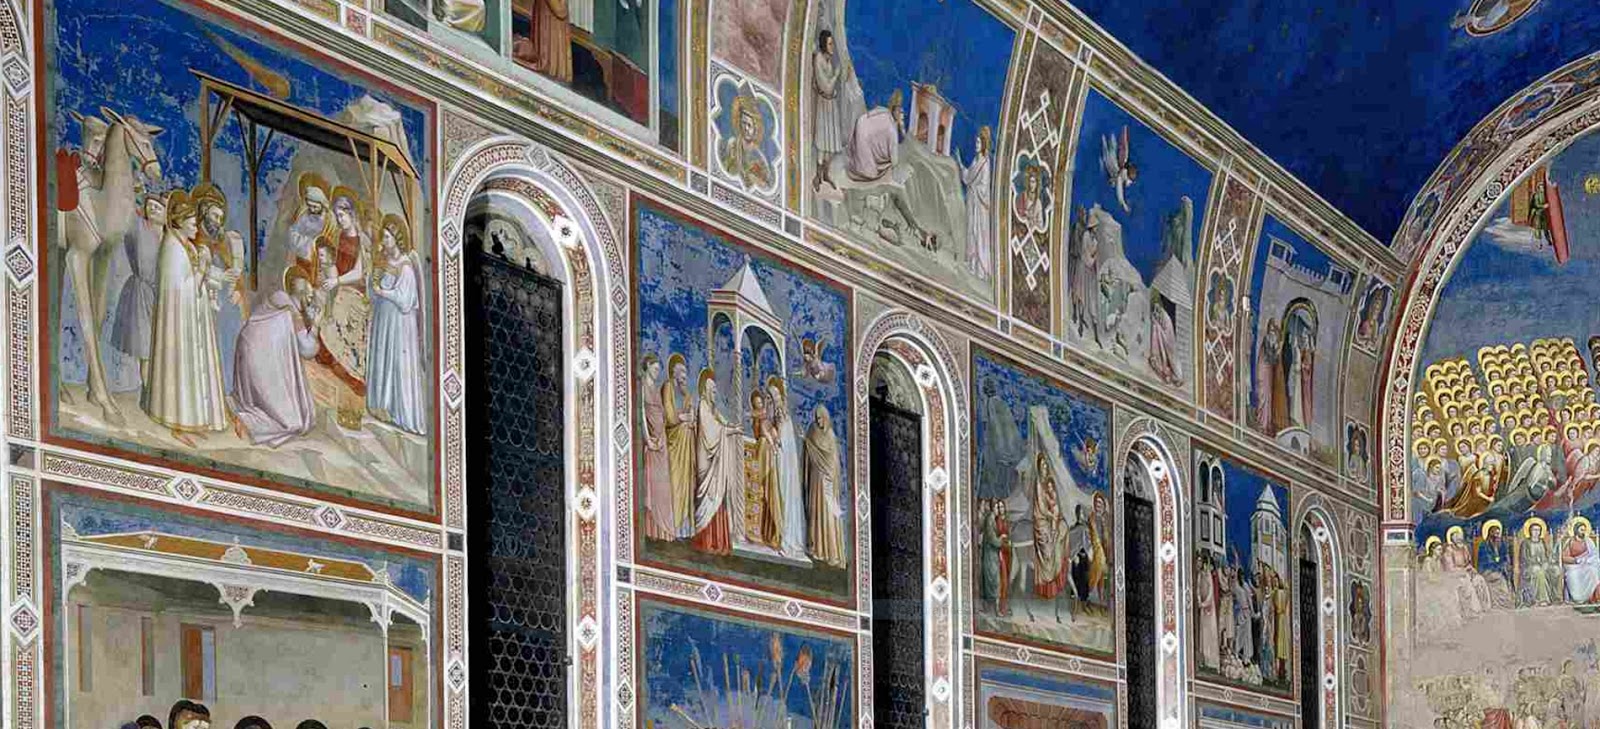 Giotto-1267-1337 (98).jpg